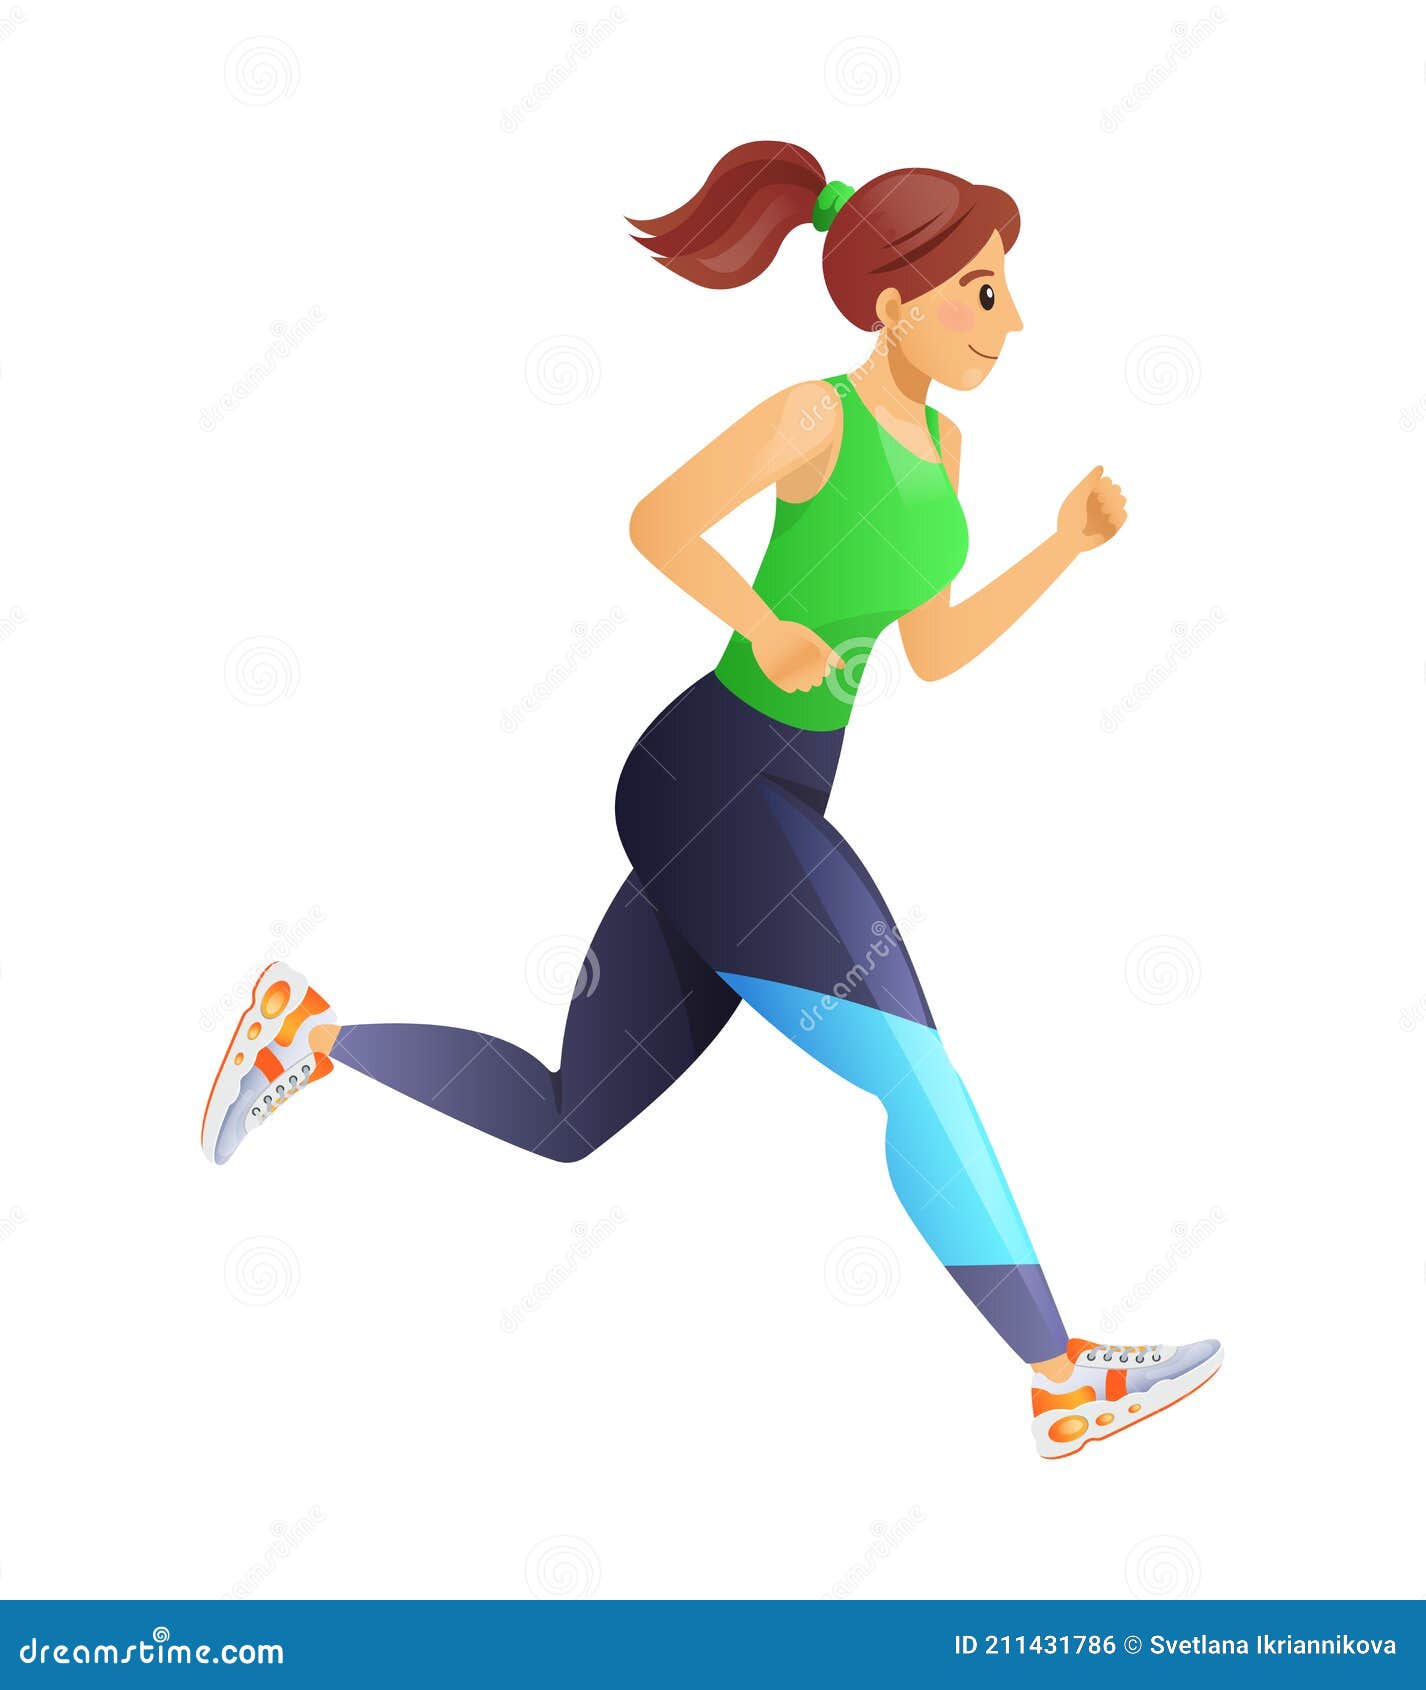 https://thumbs.dreamstime.com/z/fitness-running-girl-equipo-de-para-mujer-estilo-vida-saludable-deportes-formaci%C3%B3n-marat%C3%B3n-dibujos-animados-vector-entrenamiento-211431786.jpg